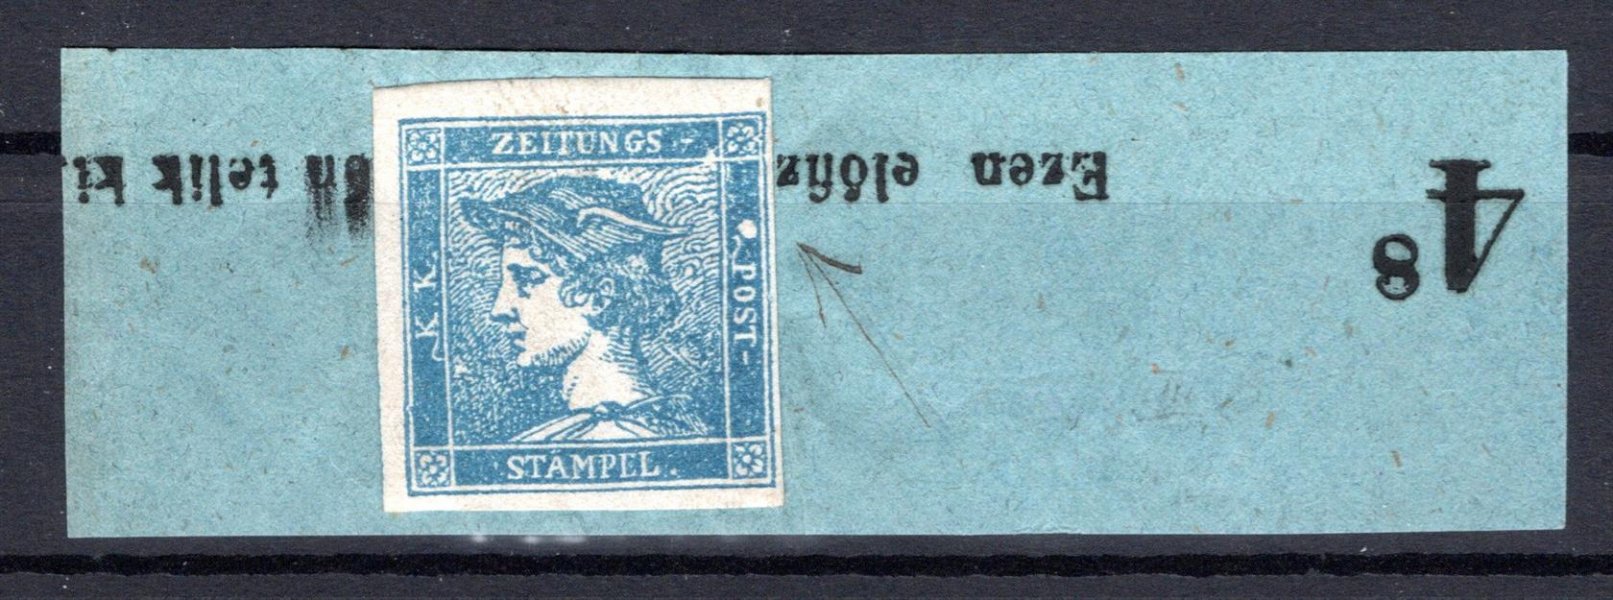 6 modrý merkur na části novinové pásky, , typ IIIa , neražený, výrazná desková vada - bíla skvrna vpravo 